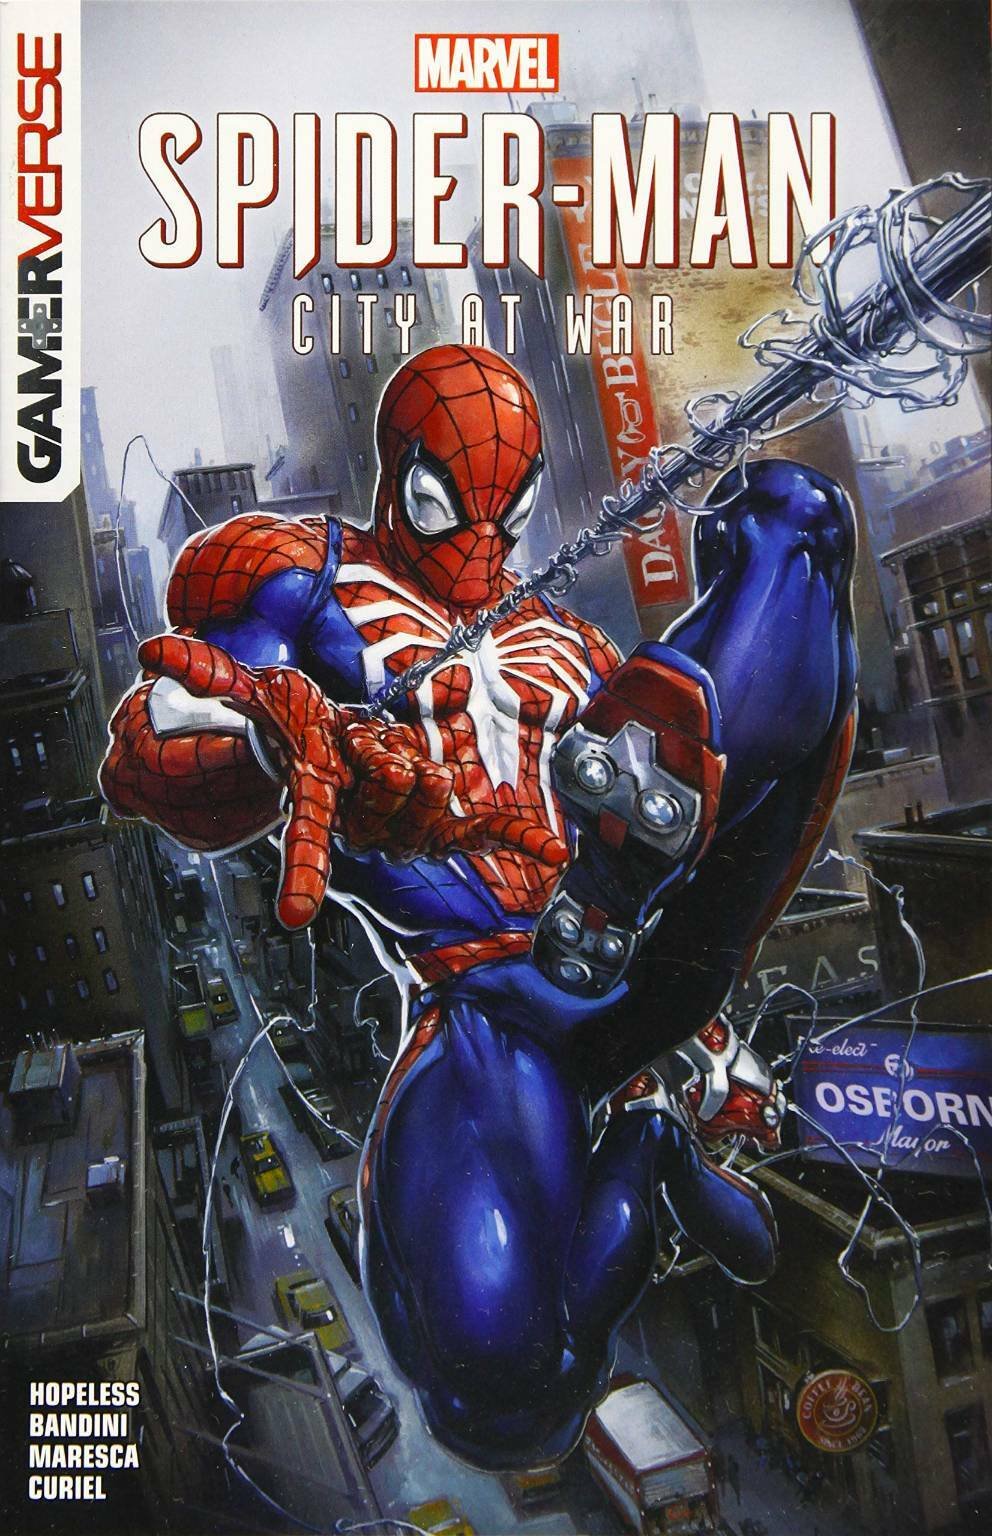 Marvel's Spider-Man: alla scoperta dei fumetti dei giochi Insomniac -  SpazioGames